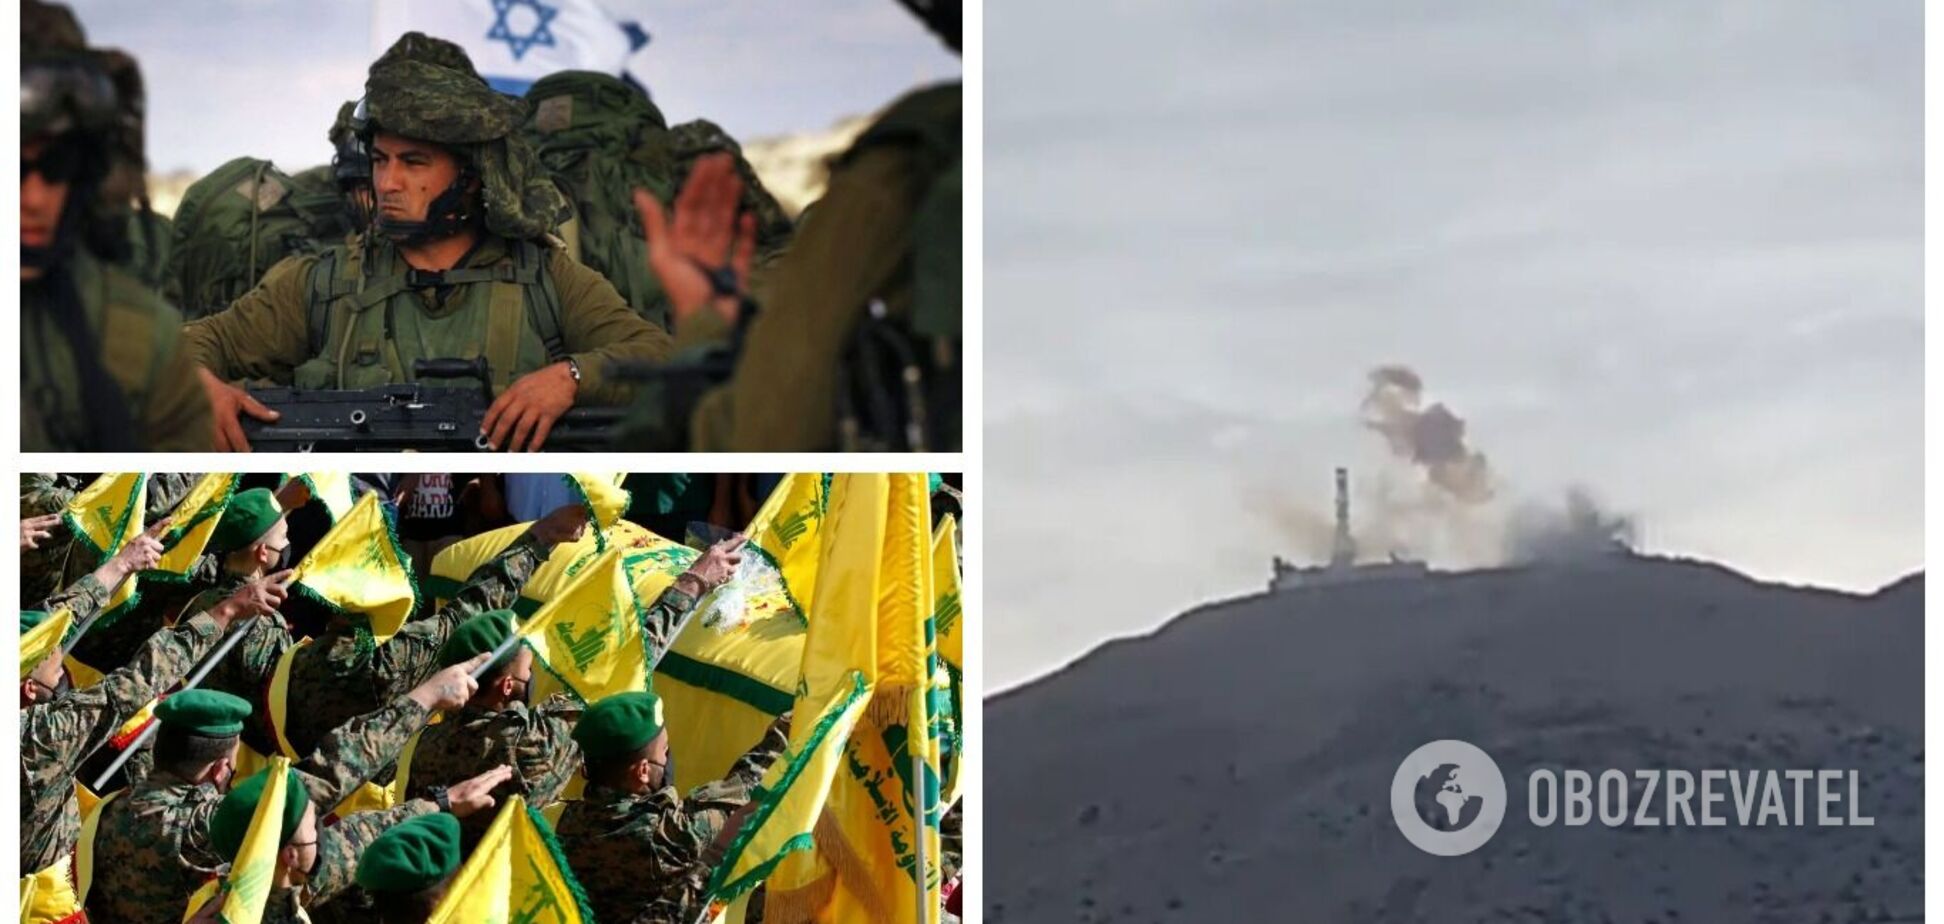 Ливанская группировка 'Хезболла' обстреляла Израиль 'в знак солидарности': ЦАХАЛ нанес ответные удары. Видео